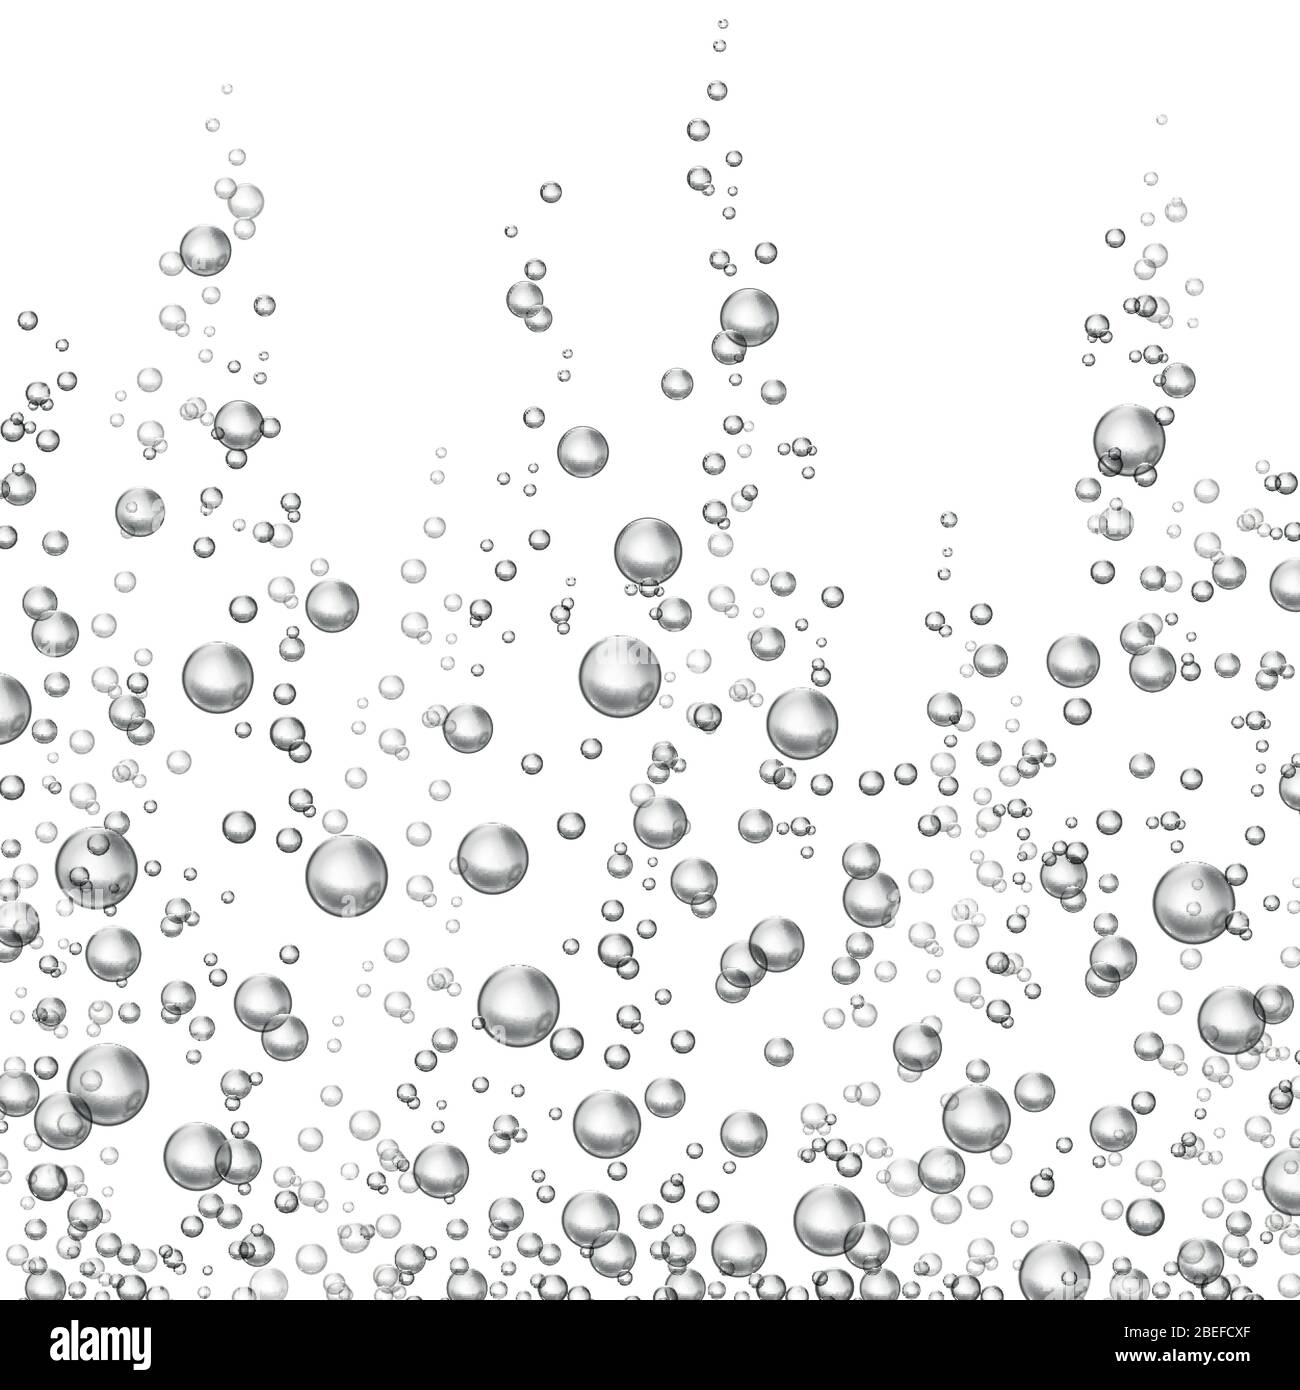 Immagine vettoriale isolata con bolle di ossigeno che si sfavano. Bolla d'aria trasparente Illustrazione Vettoriale